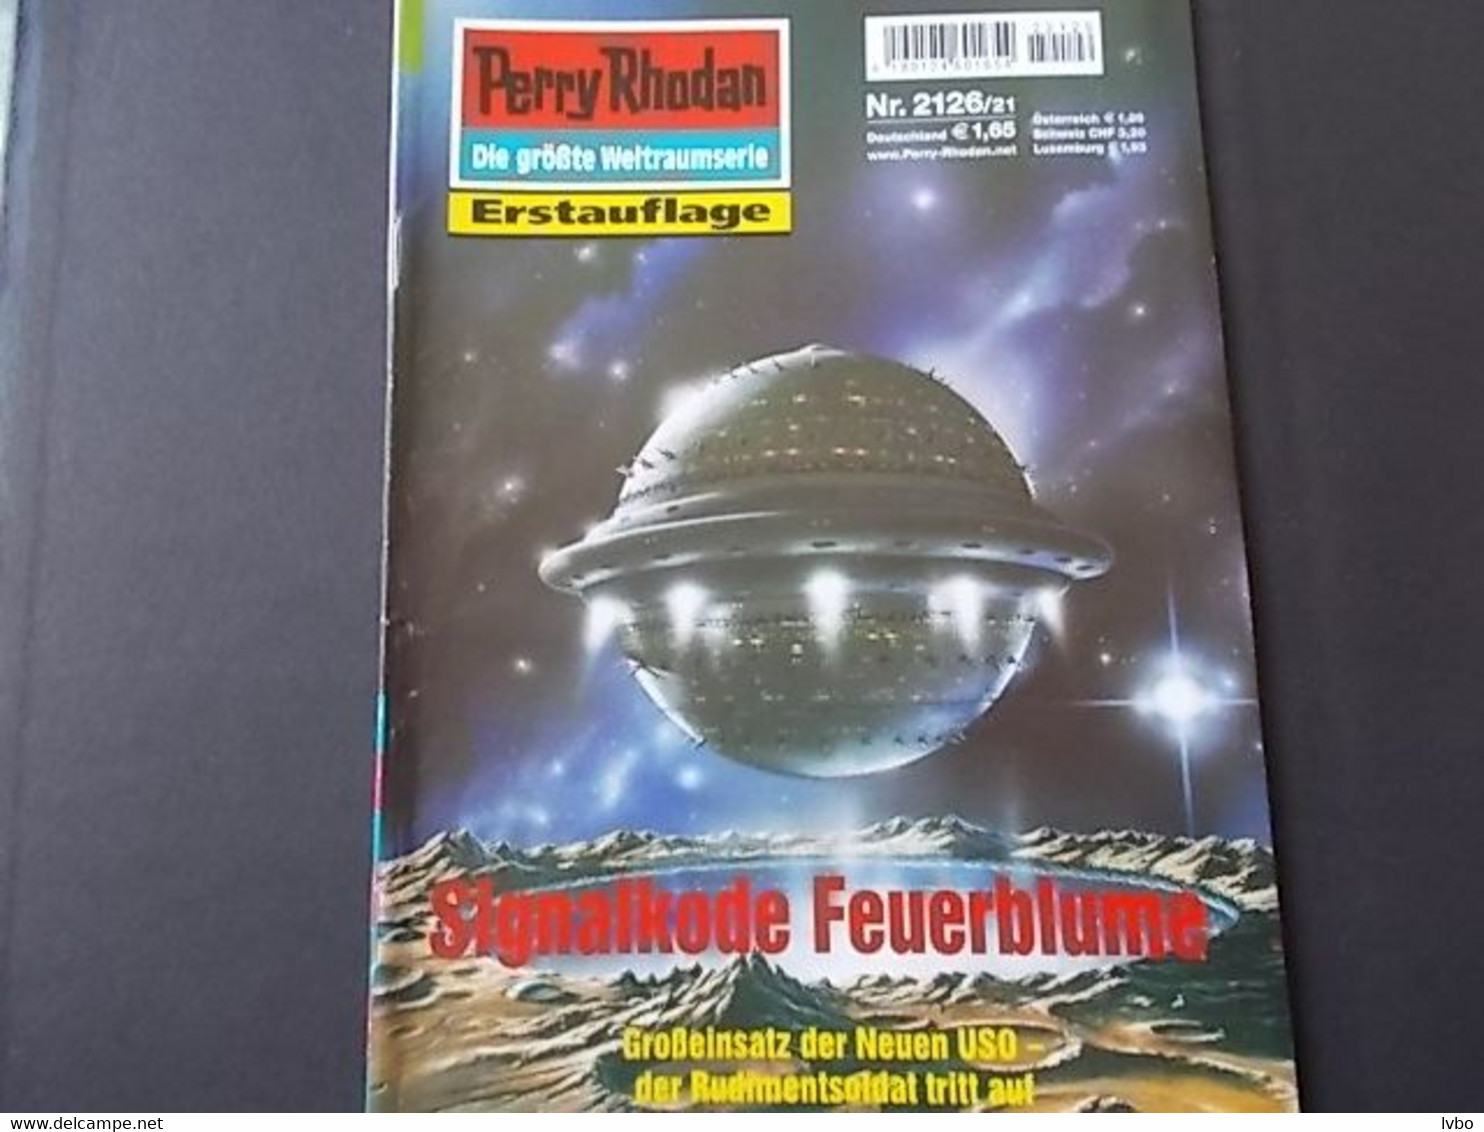 Perry Rhodan Nr 2126 Erstauflage Signalkode Feuerblume - Fantascienza